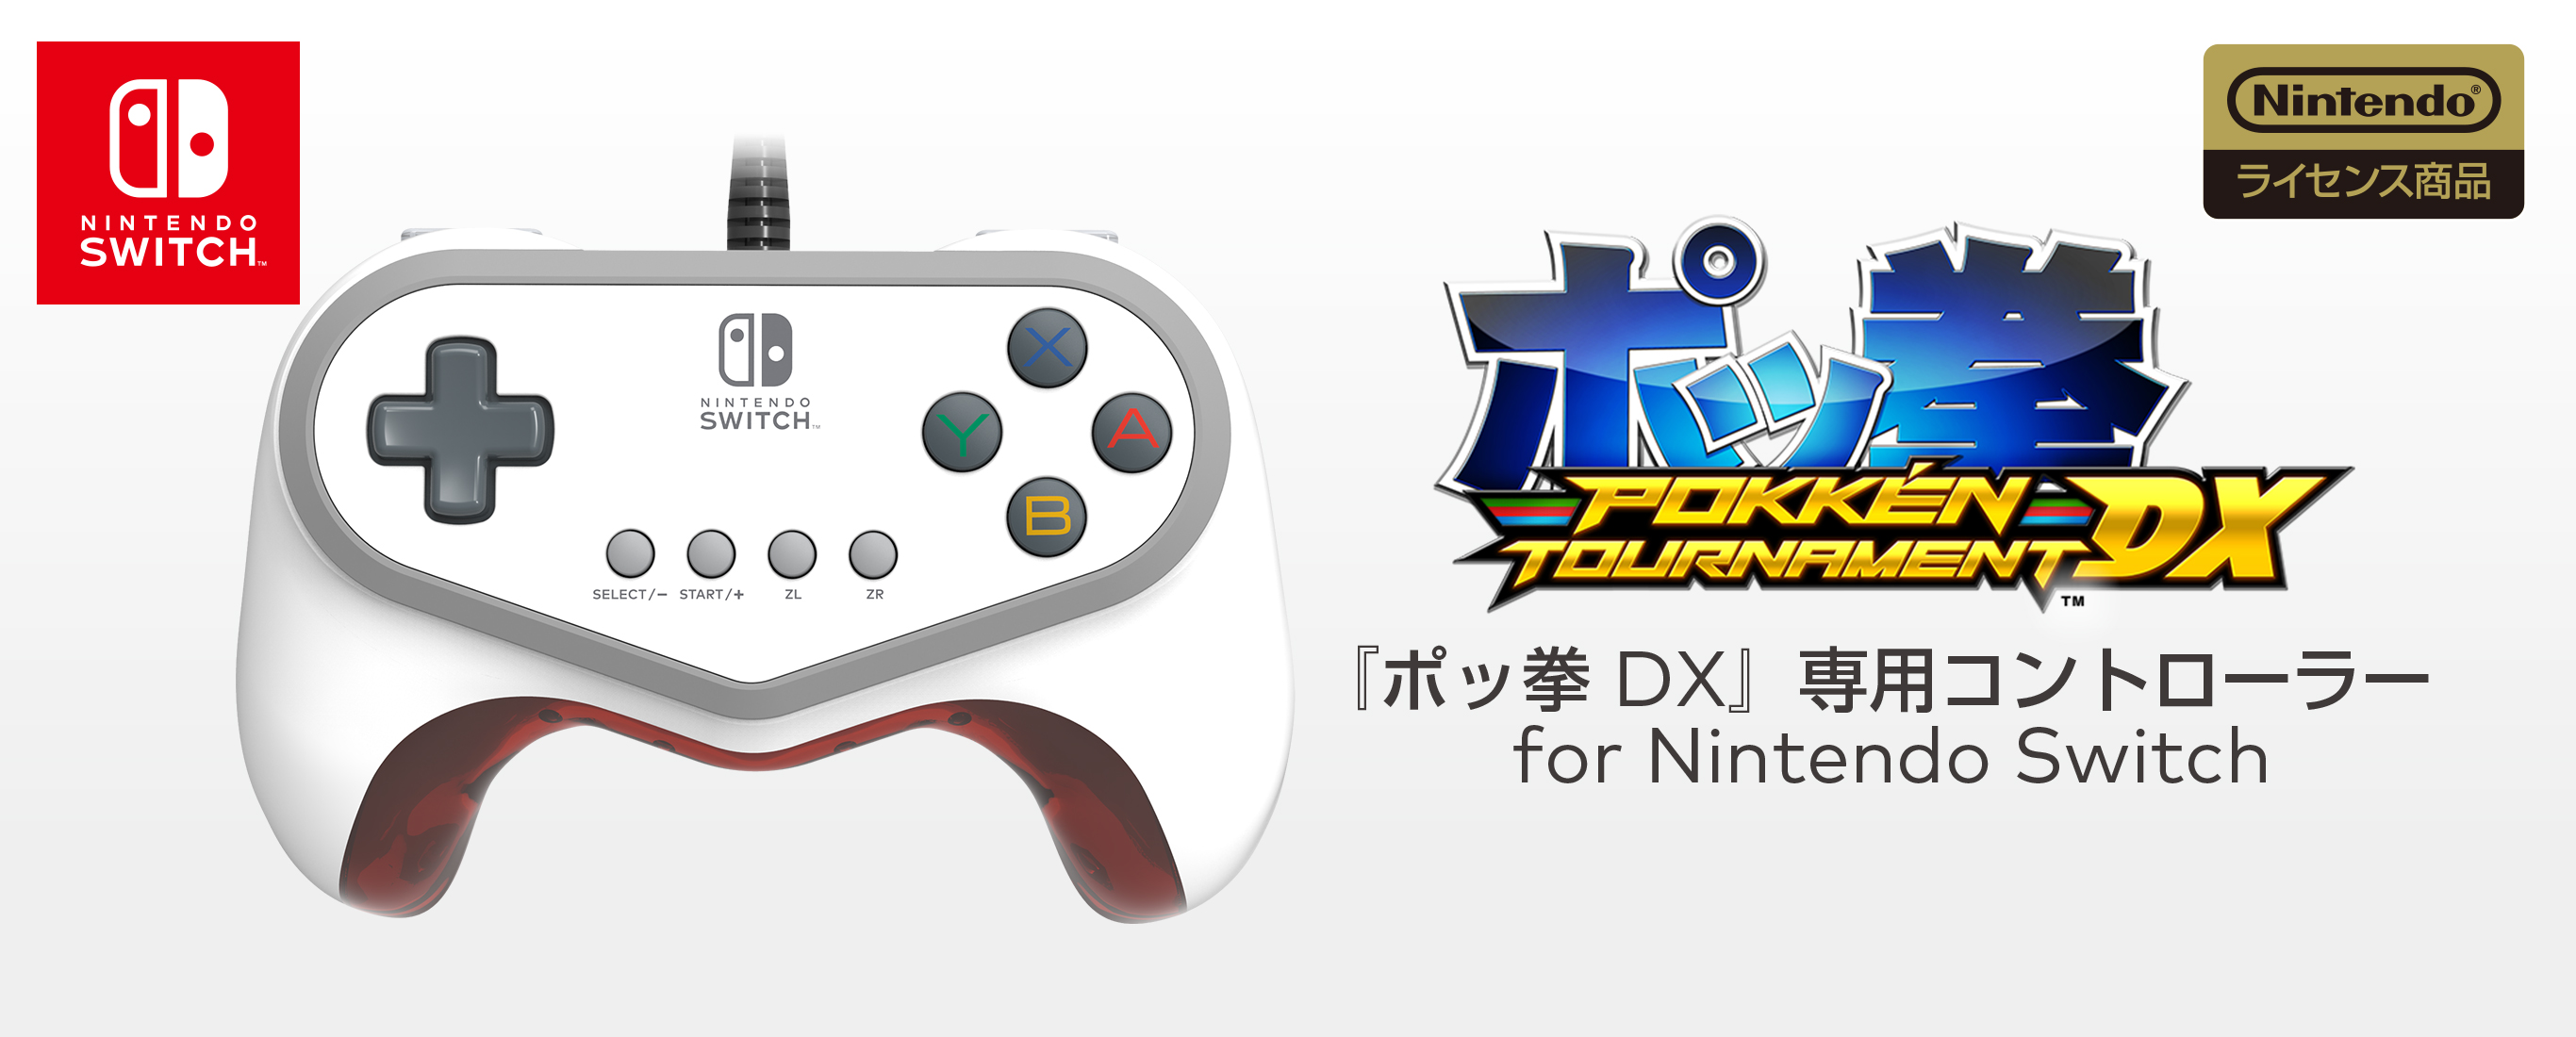 株式会社 Hori ポッ拳 Dx 専用コントローラー For Nintendo Switch